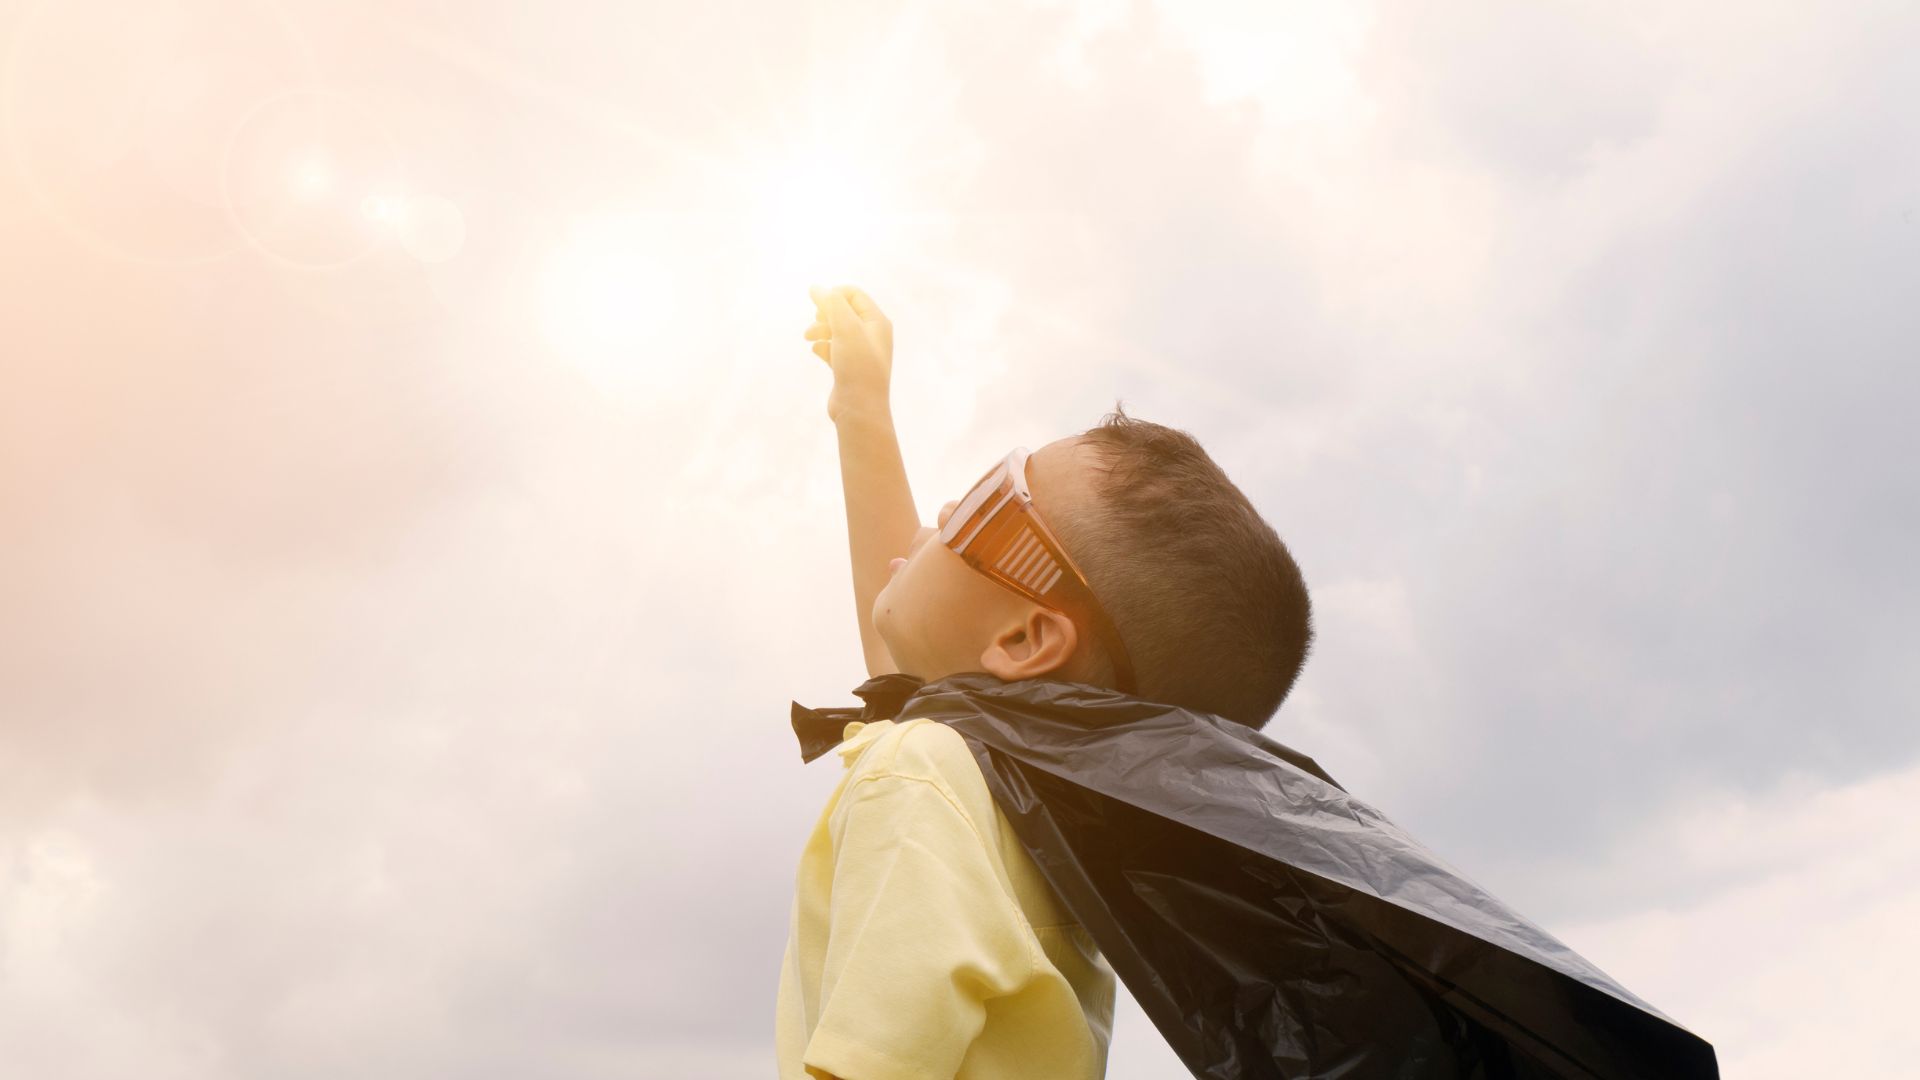 一個穿著超級英雄斗篷的小男孩正伸向太陽，展現決心和勇敢。